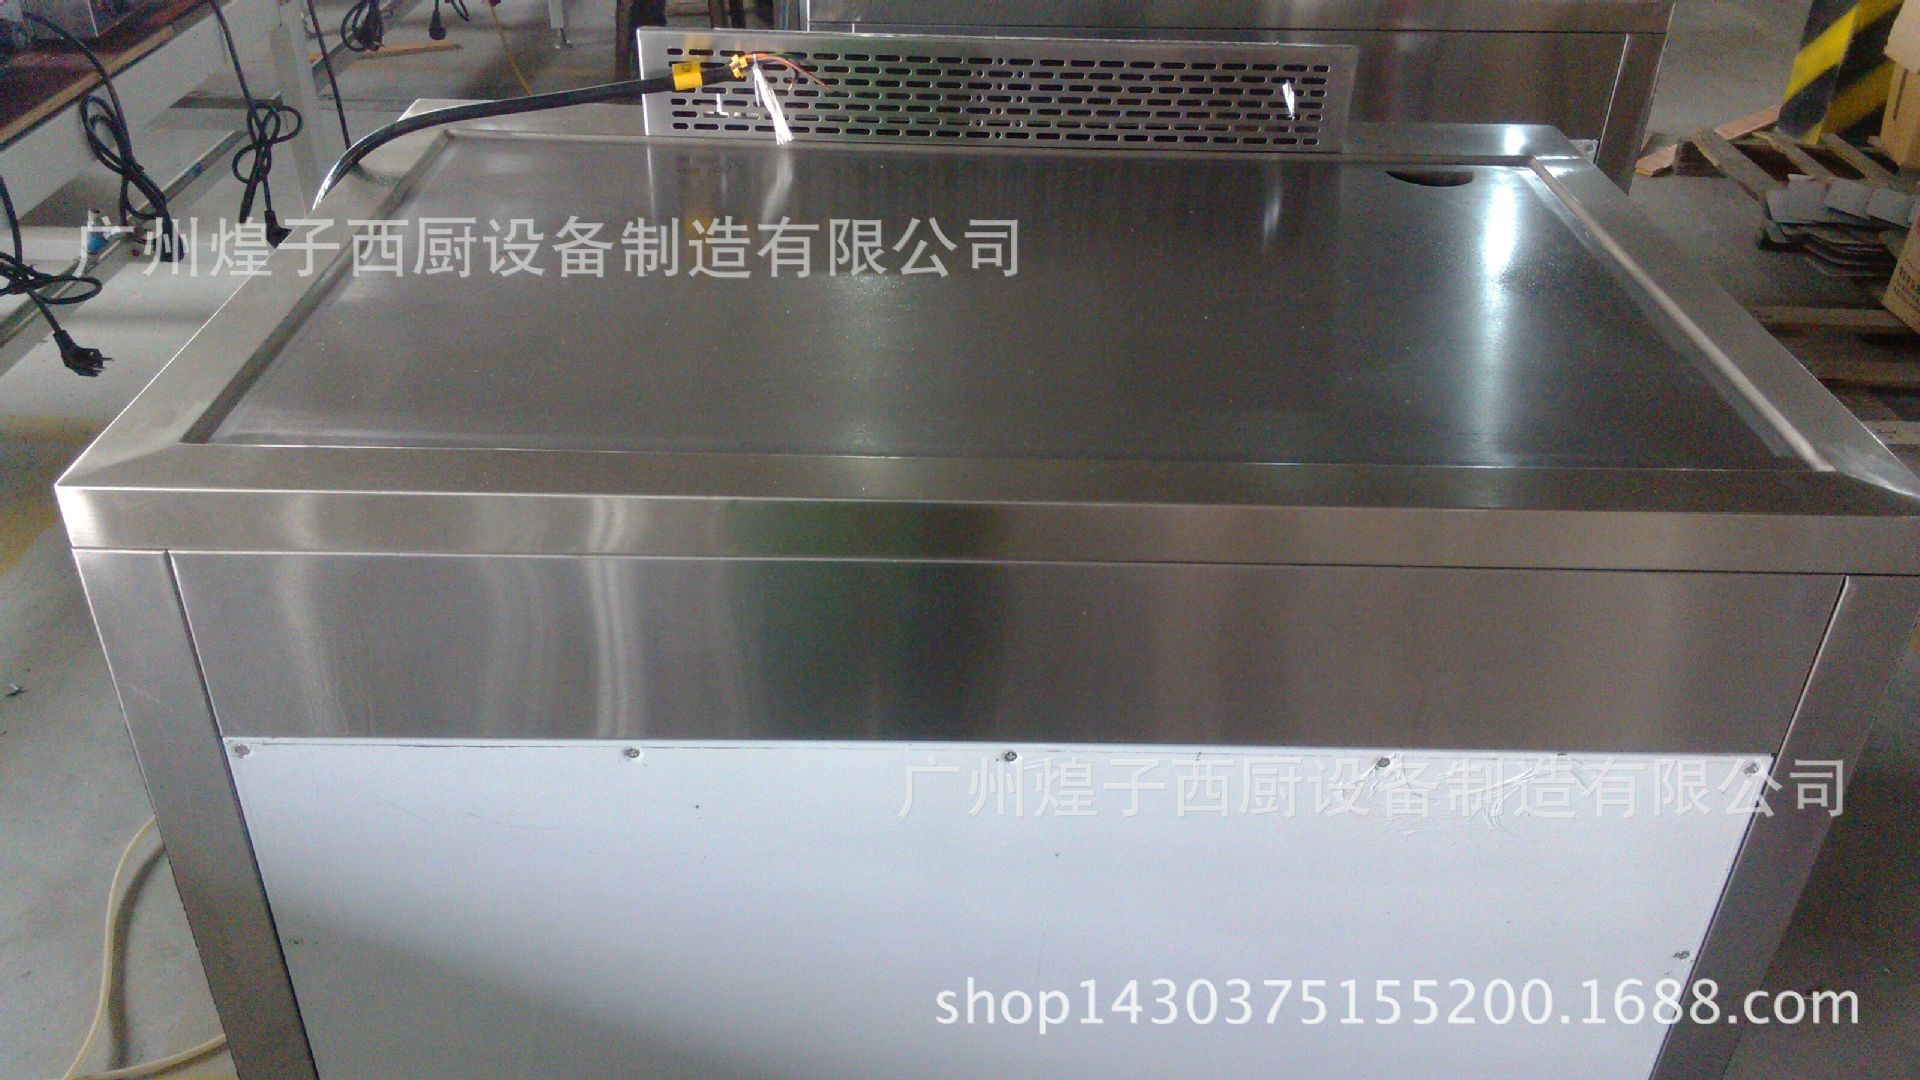 王子西厨EG-1200T加厚日式电铁板烧 商用铜锣烧韩国料理设备